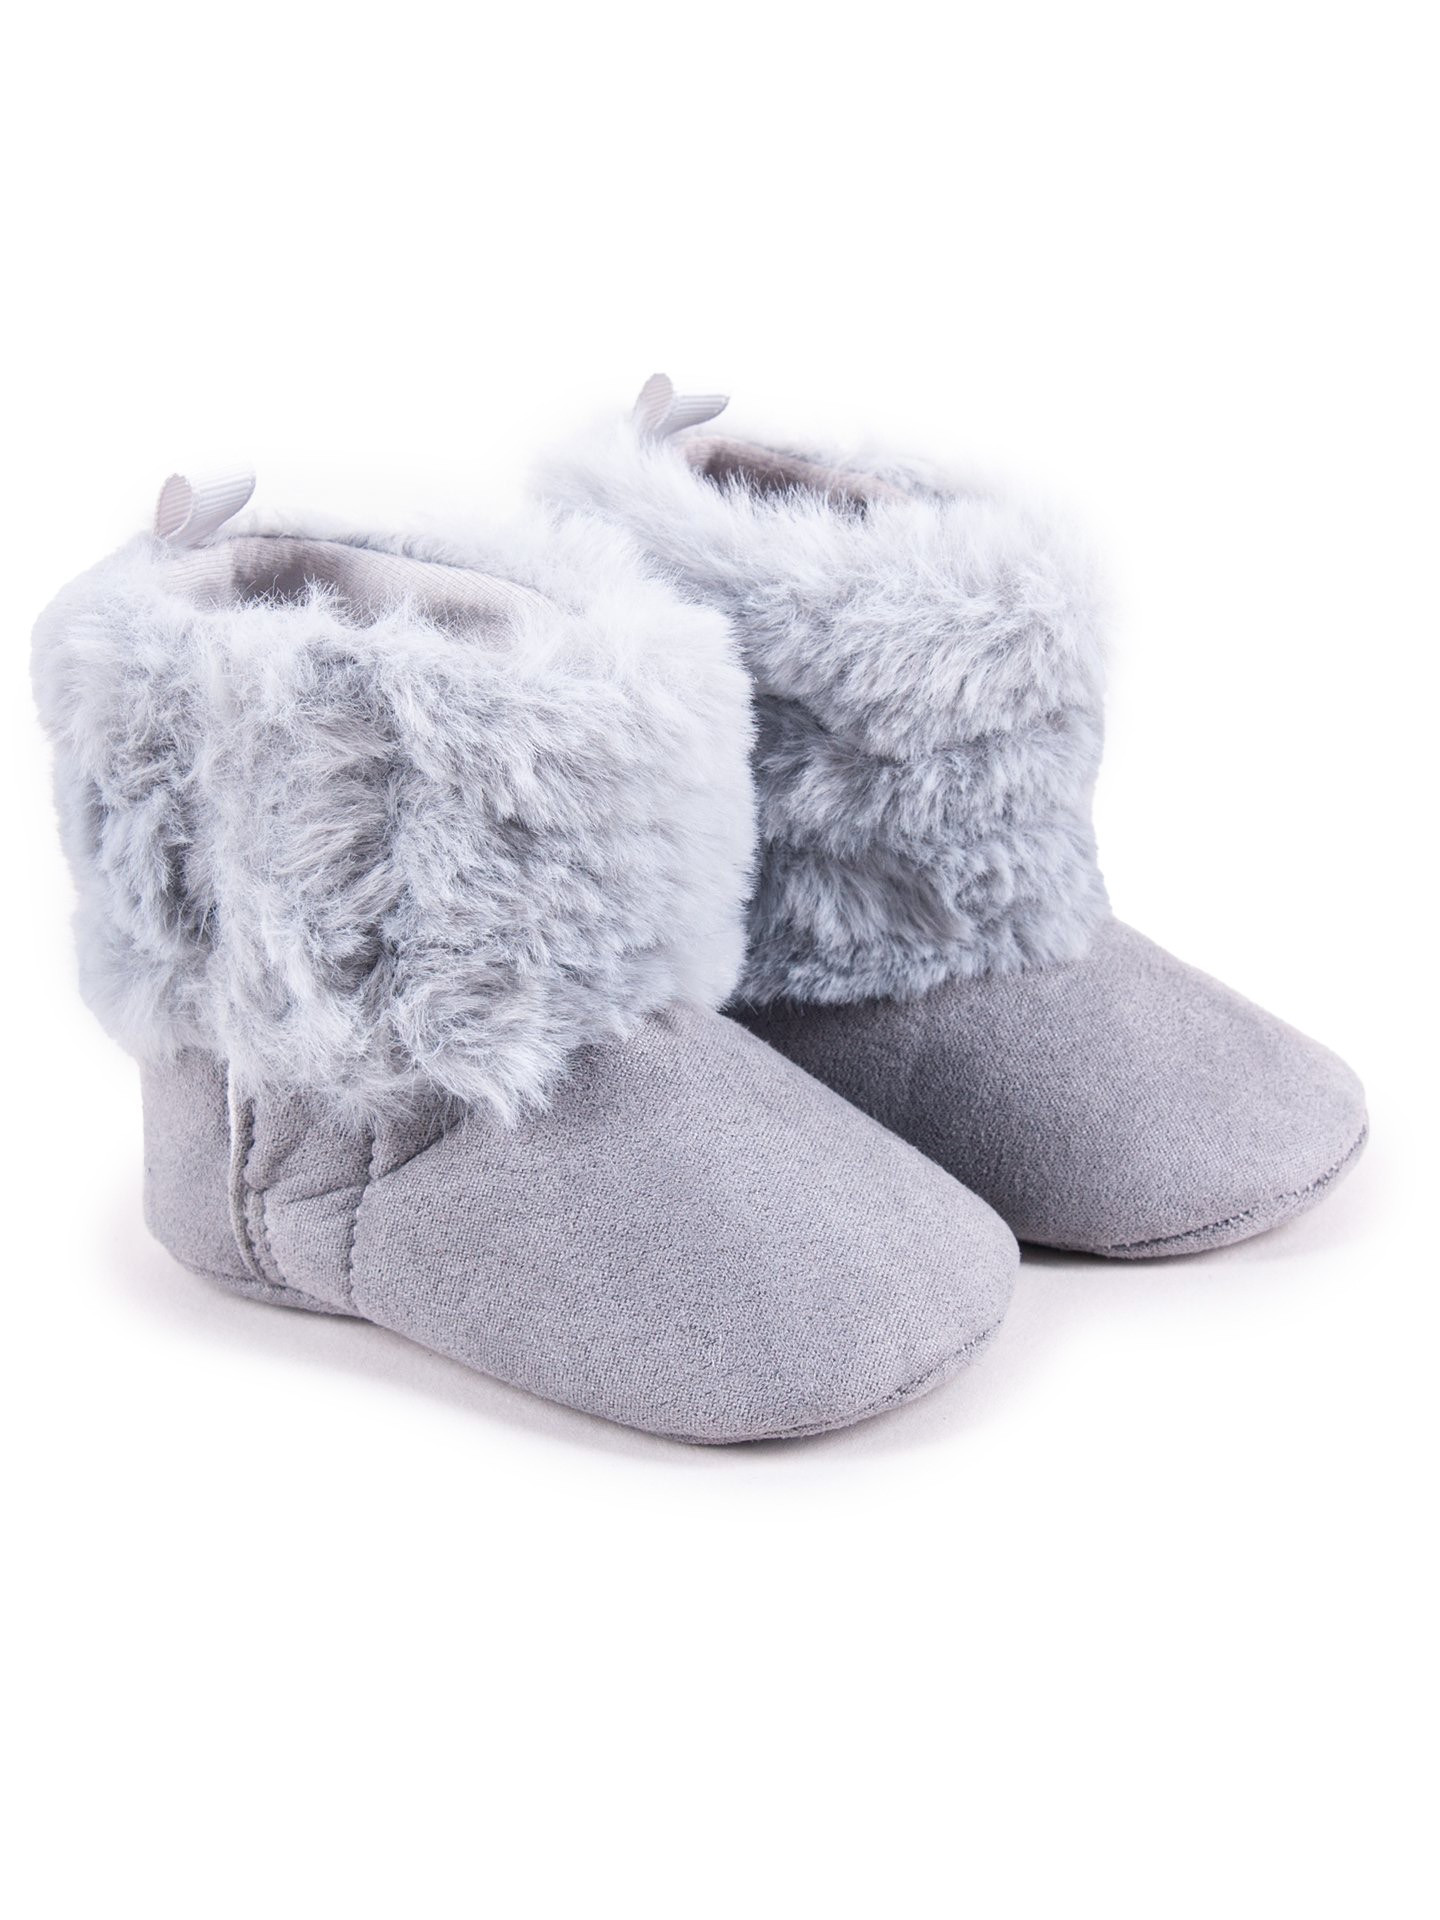 Yoclub Dívčí boty na suchý zip OBO-0188G-2800 Grey 0-6 měsíců